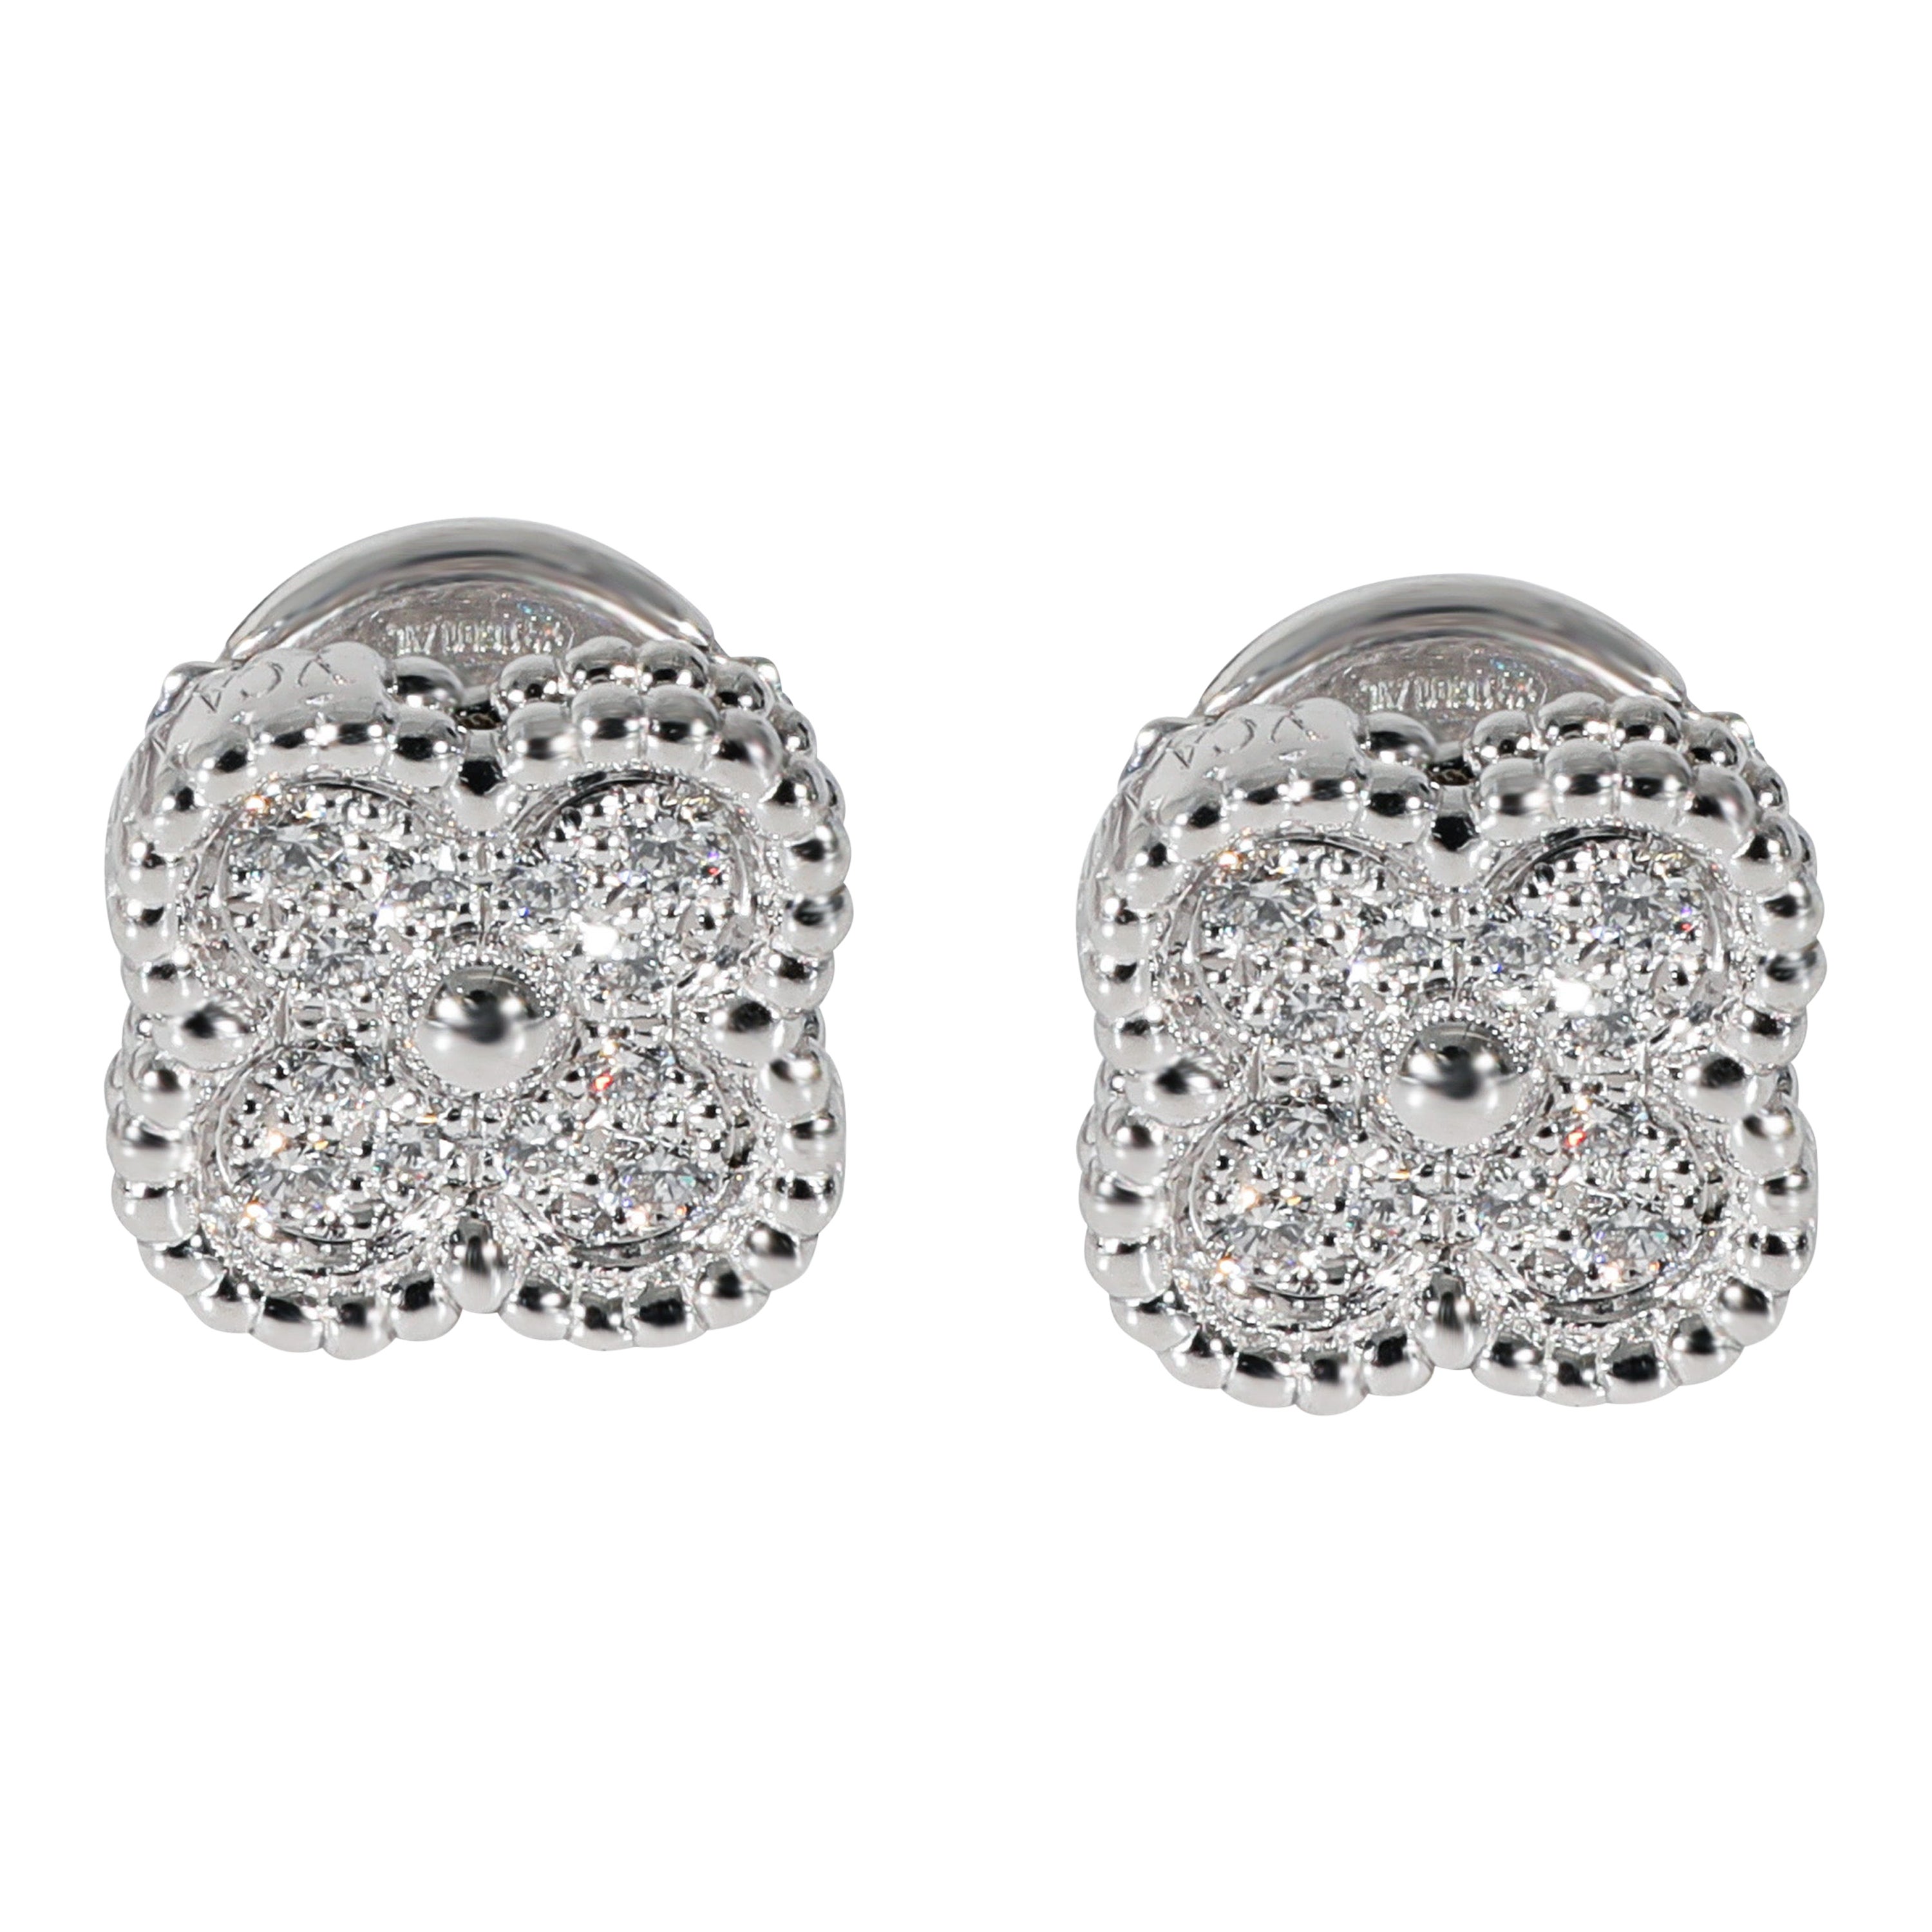 Van Cleef & Arpels Sweet Alhambra Diamond Earrings in 18k White Gold 0.16 CTW